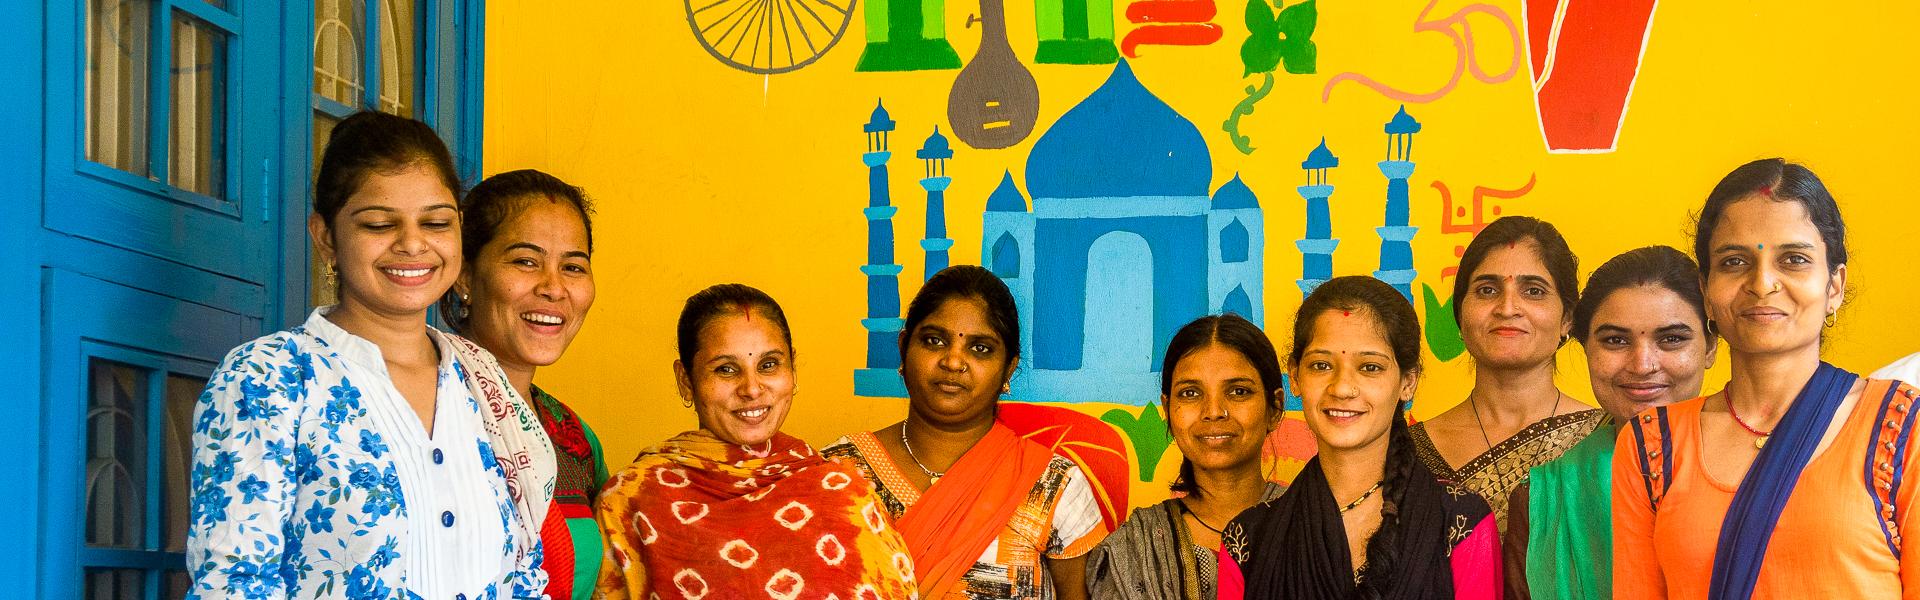 Frauenpower in der Sanshil Foundation |  Kathrin Colley / Chamleon